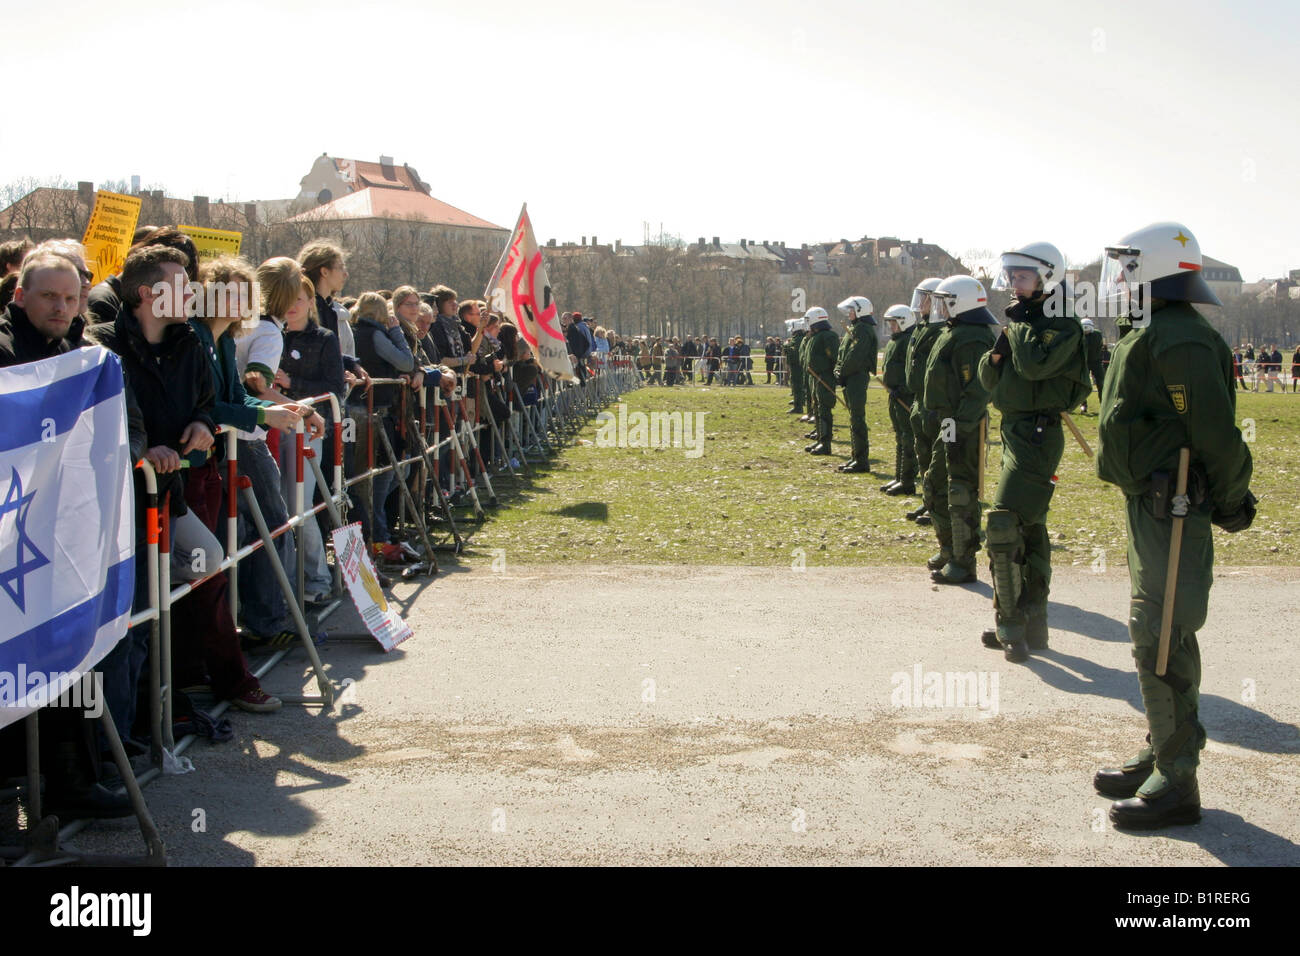 Les manifestants protestaient contre une manifestation néonazie, situé en face d'une rangée de policiers, Munich, Bavaria, Germany, Europe Banque D'Images